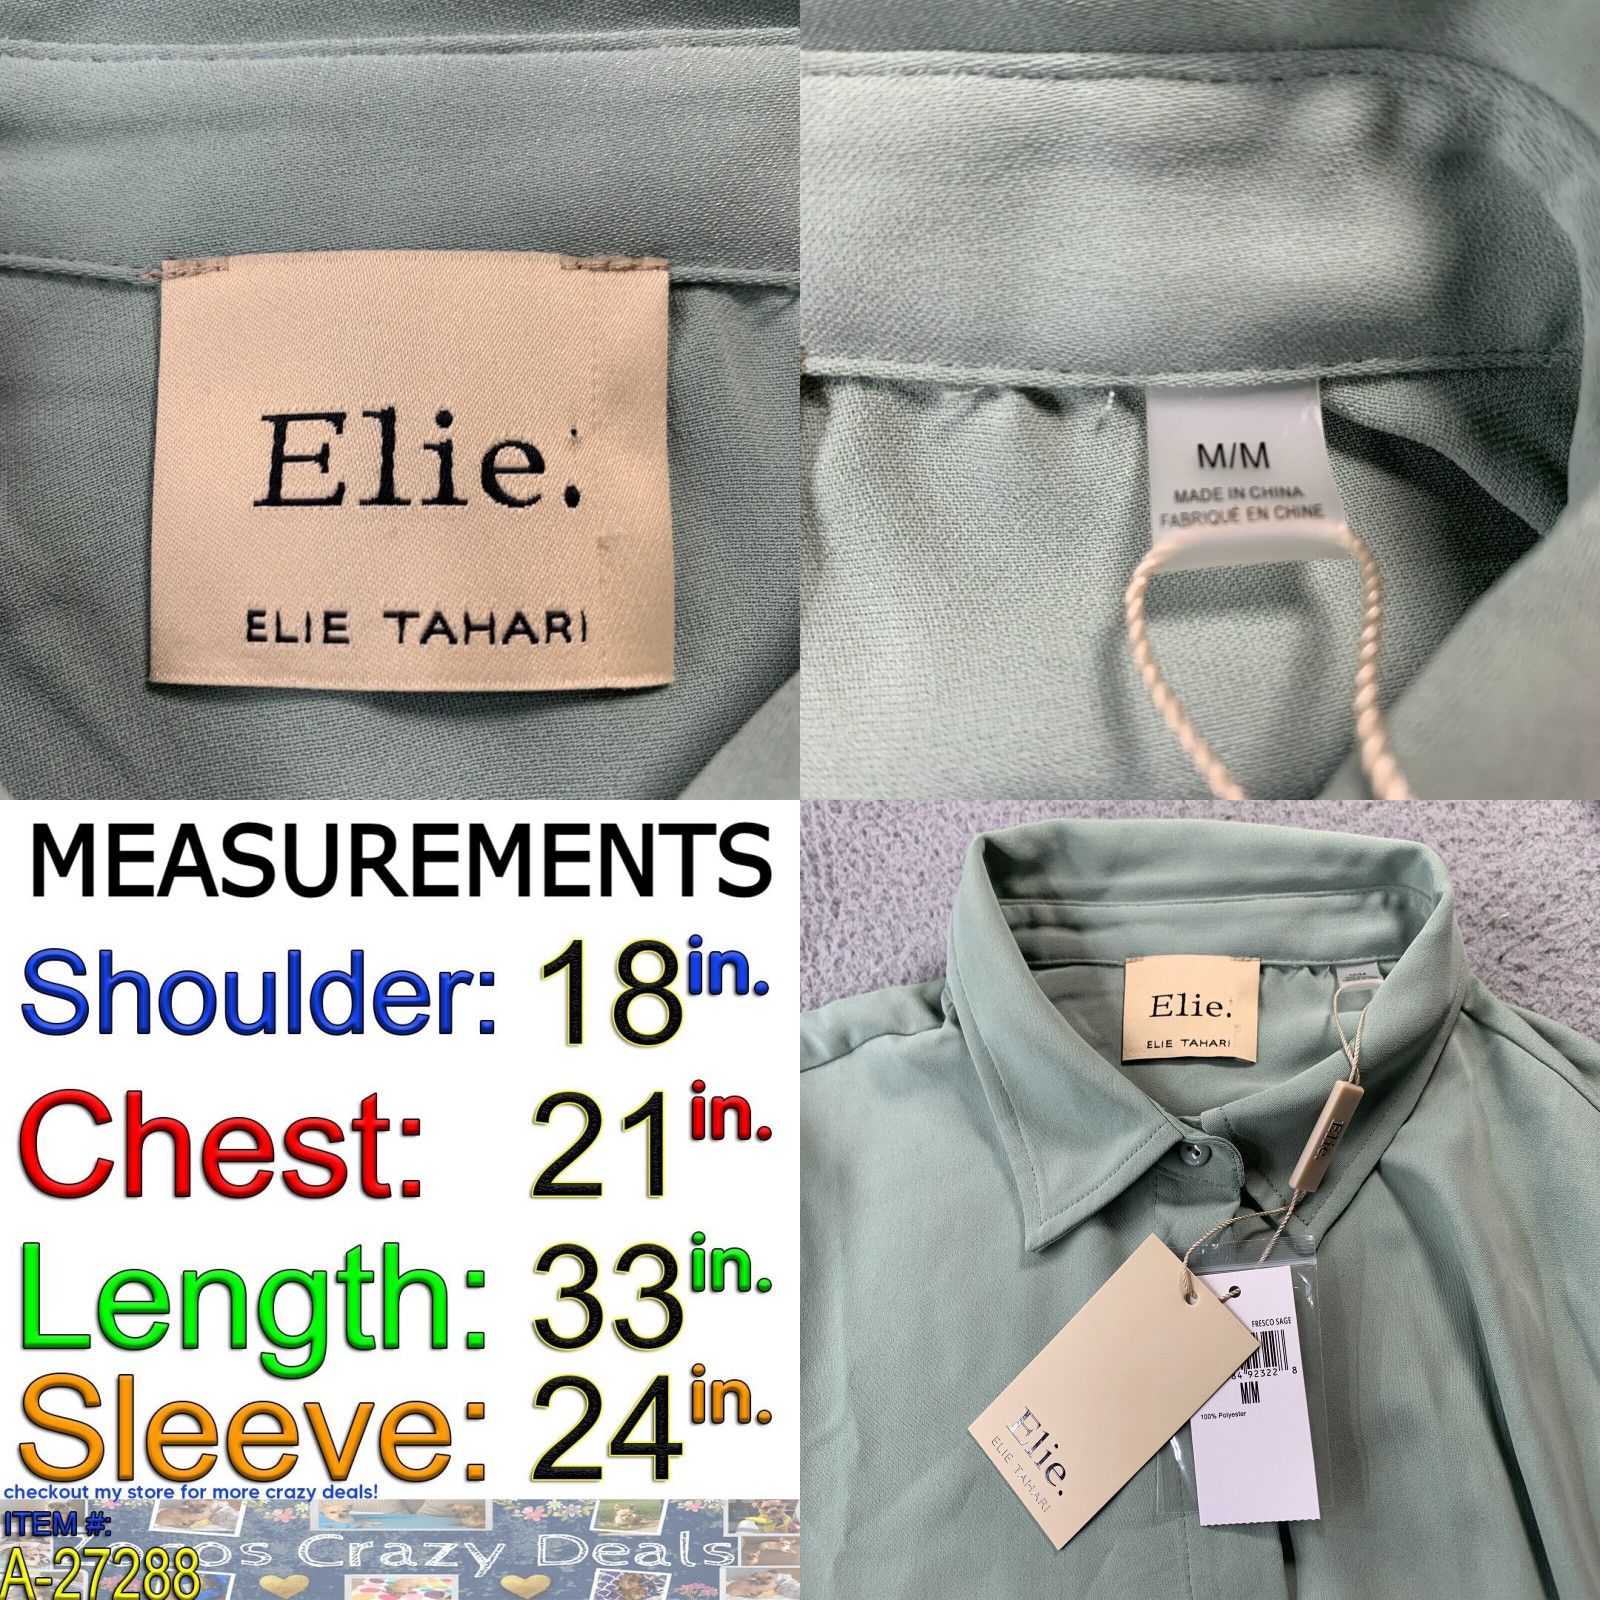 Elie Tahari ELIE ELIE TAHARI Blouse Womens Medium Top Long Sleeve Green Size M / US 6-8 / IT 42-44 - 4 Preview